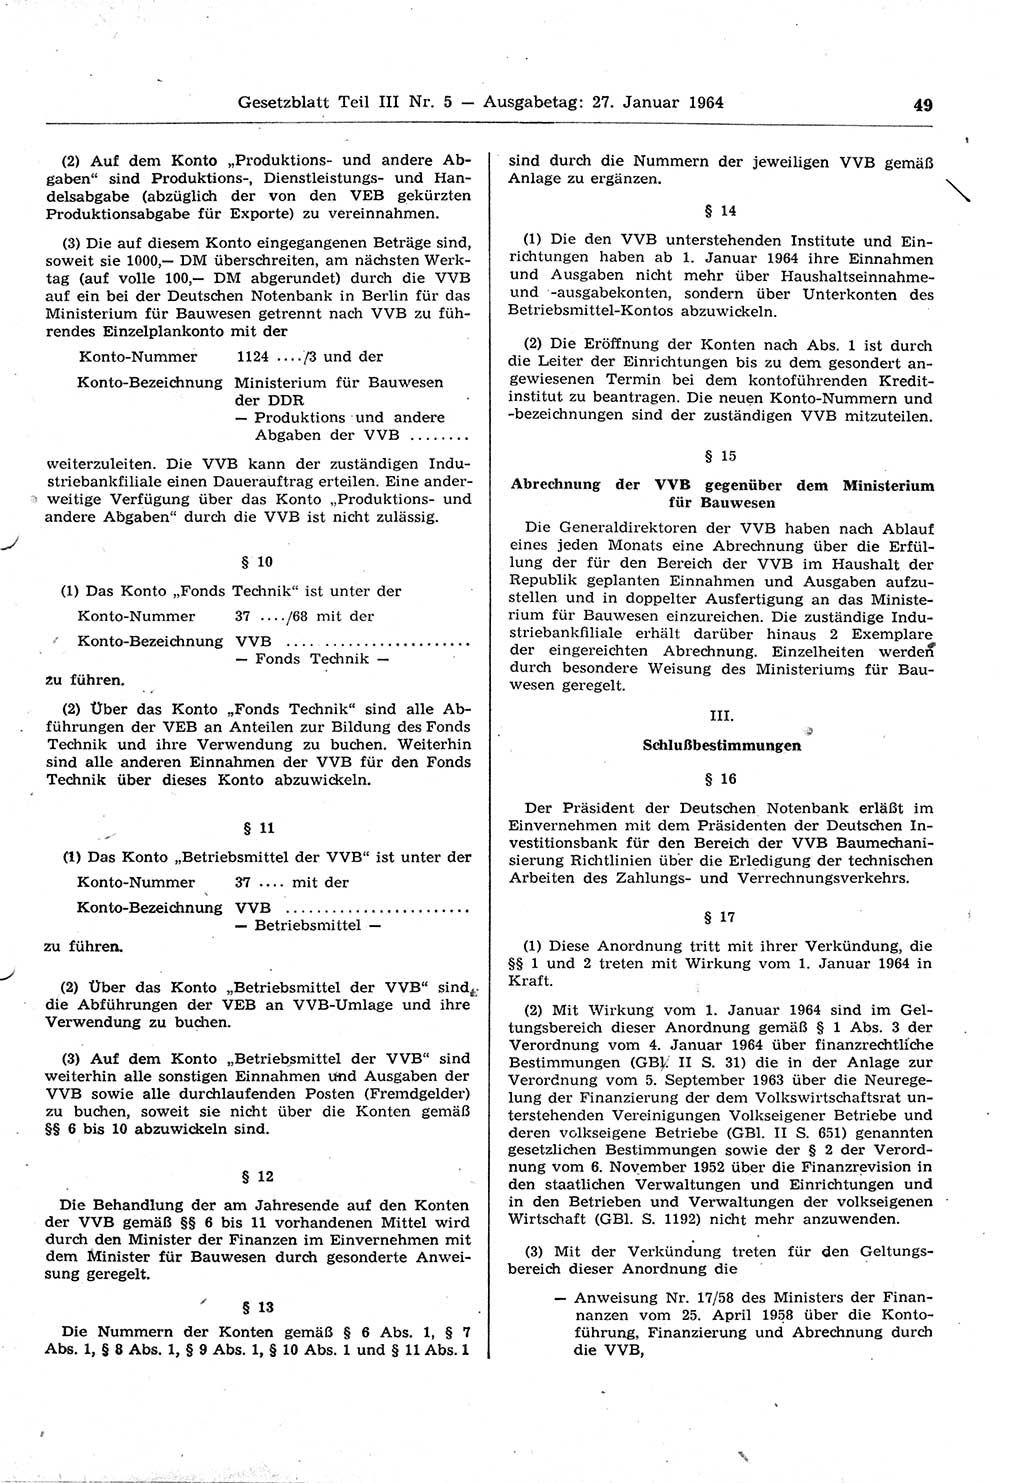 Gesetzblatt (GBl.) der Deutschen Demokratischen Republik (DDR) Teil ⅠⅠⅠ 1964, Seite 49 (GBl. DDR ⅠⅠⅠ 1964, S. 49)